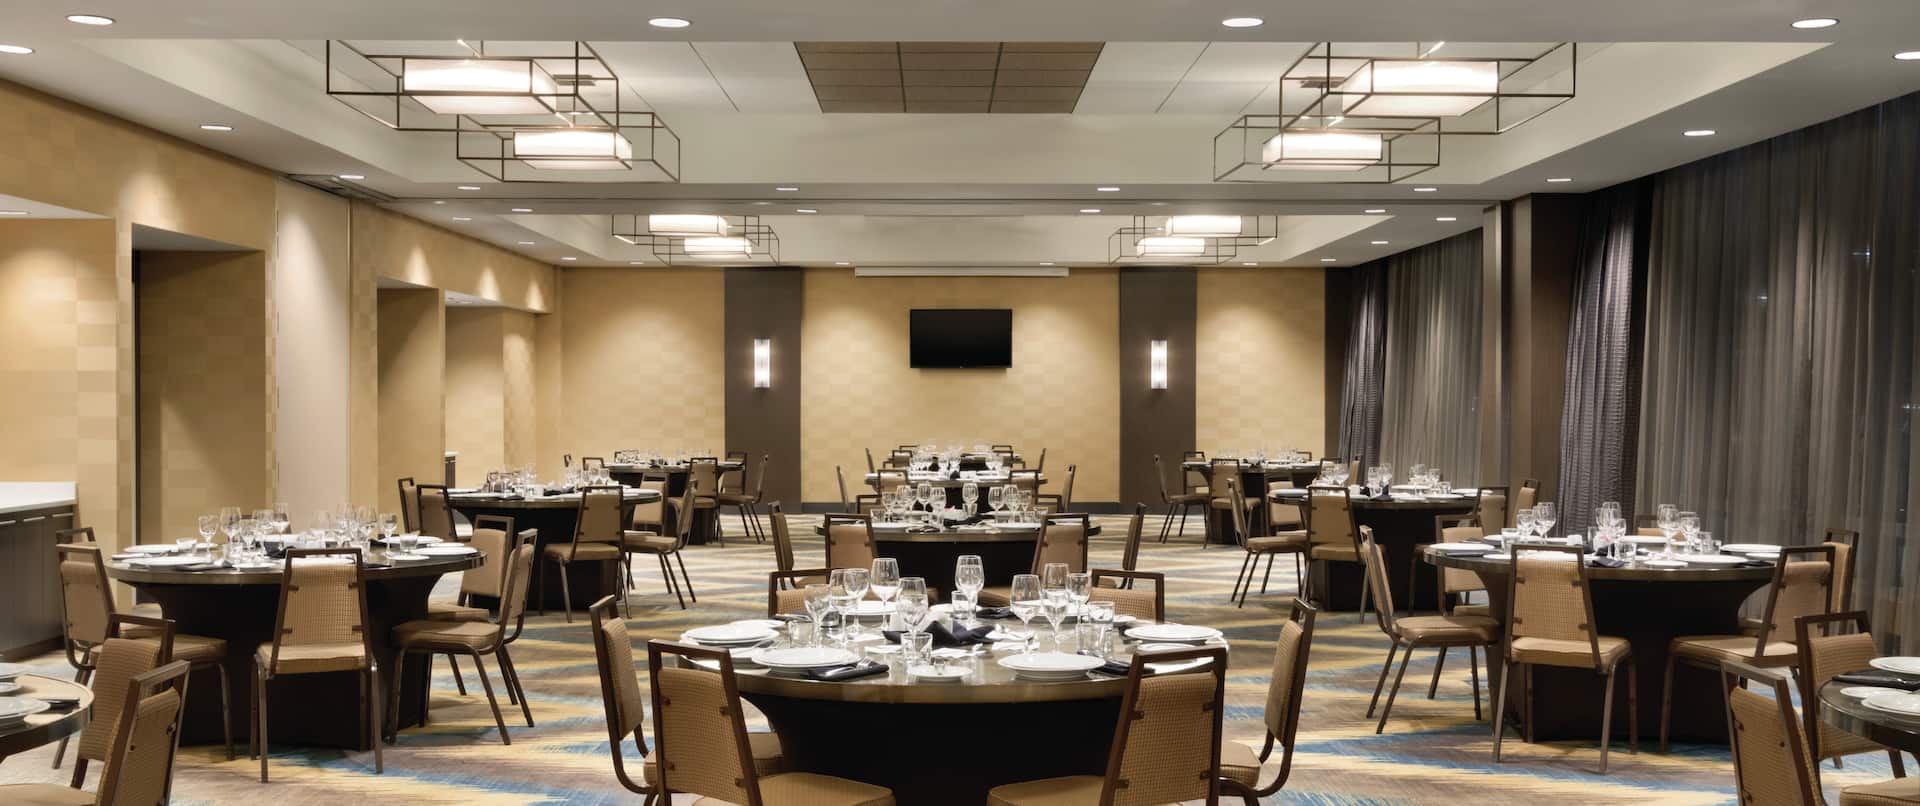 Salle de réception en configuration banquet avec tables rondes et chaises